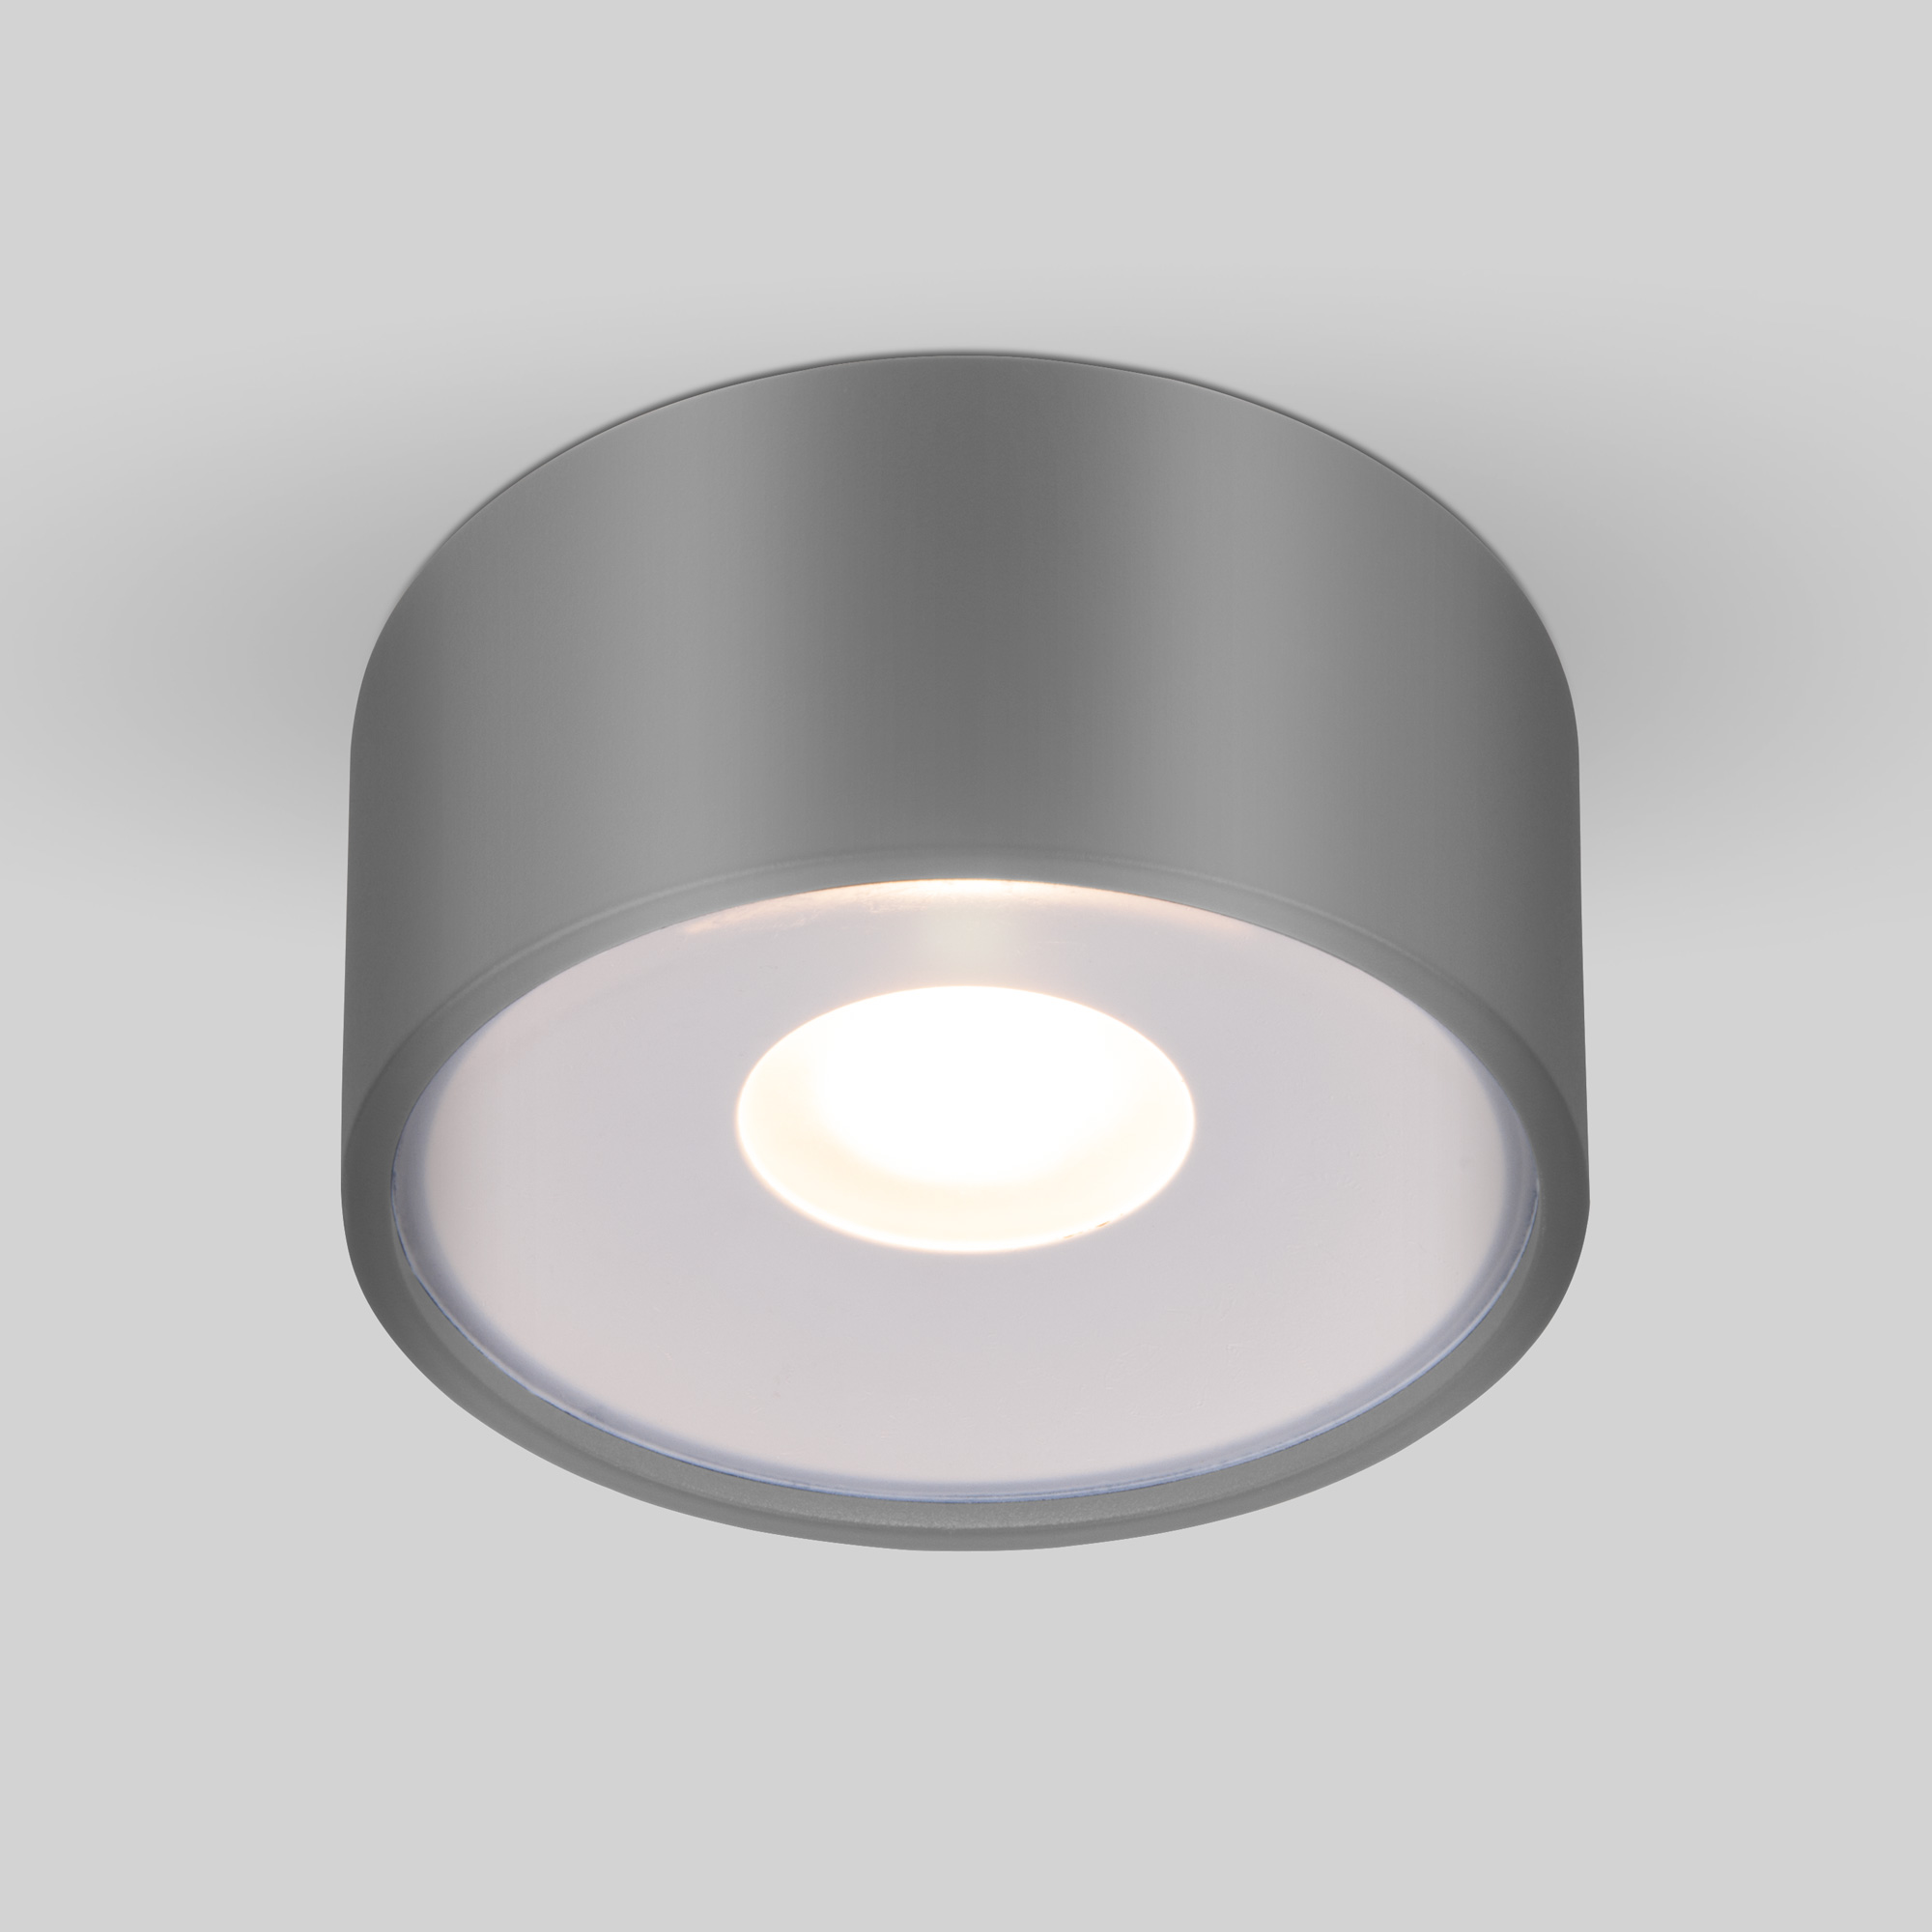 Уличный потолочный светильник Light LED 2135 IP65 35141/H серый 4690389180149